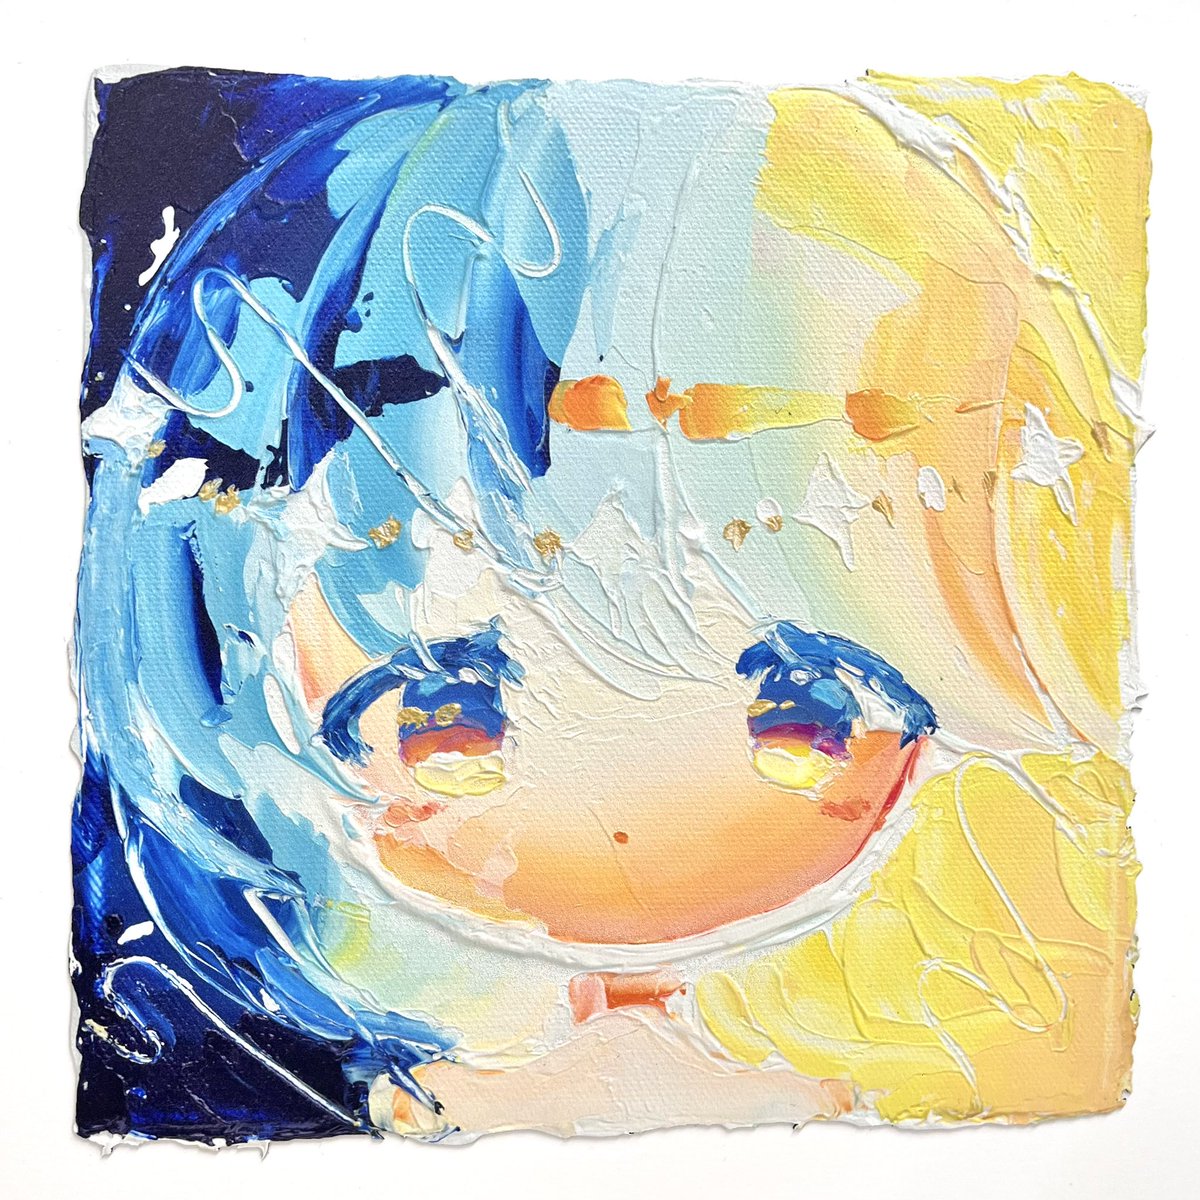 「なんとこれ版画なんです・・・!!!! サンエムカラーさんの立体UVのテストプリン」|小田望楓‎‎✿Mifuu Odaのイラスト